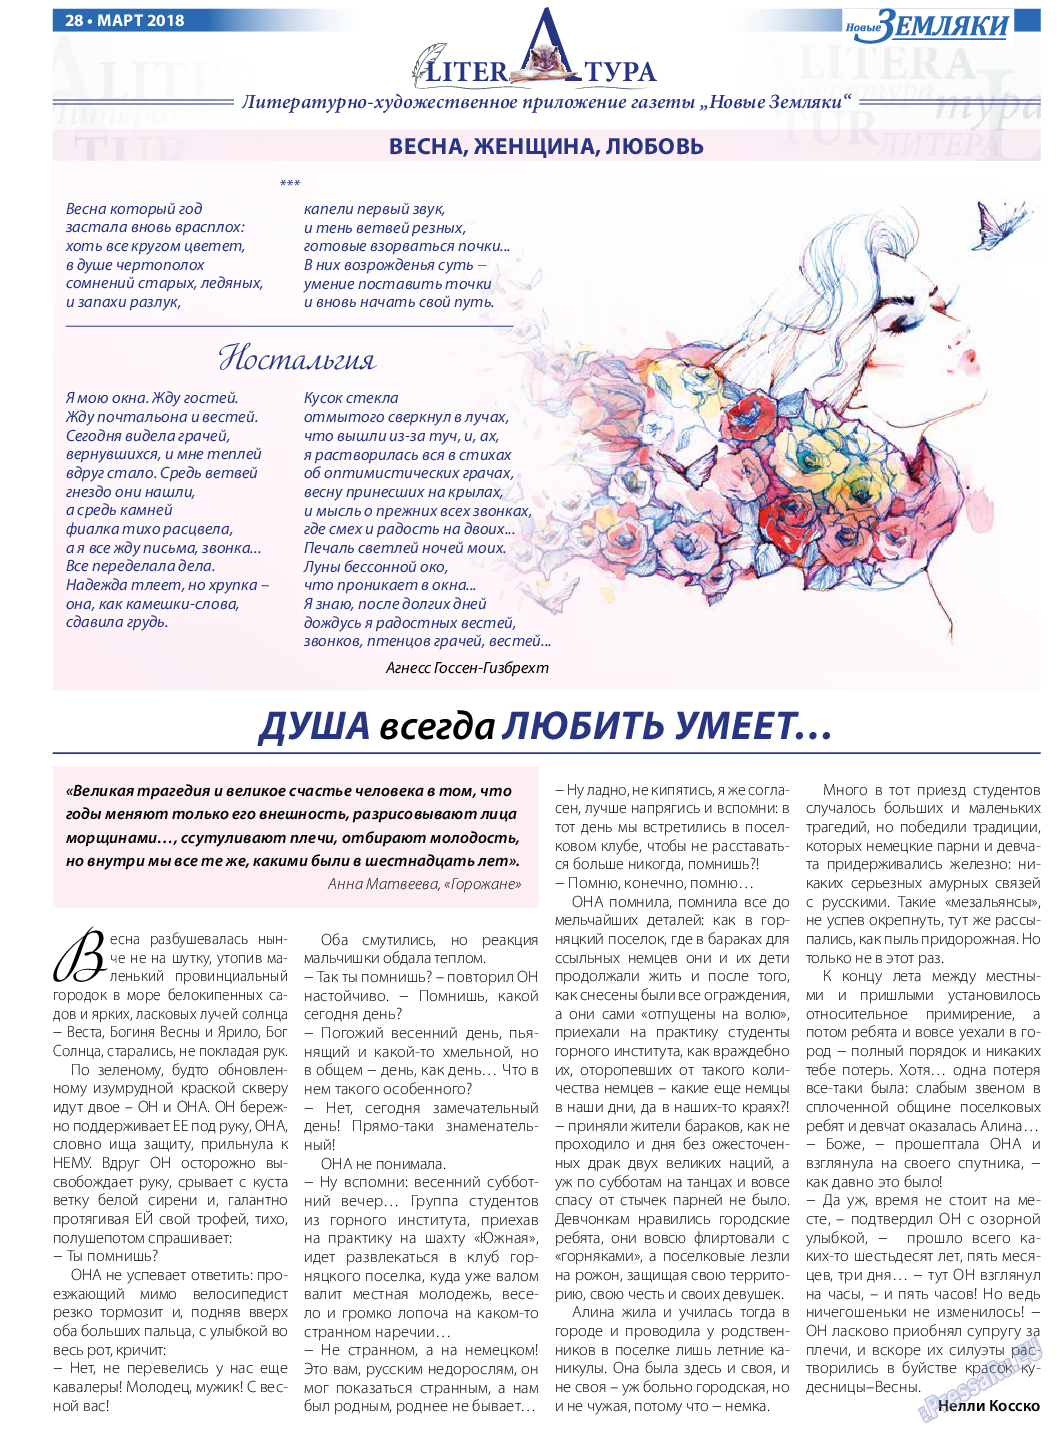 Новые Земляки (газета). 2018 год, номер 3, стр. 28